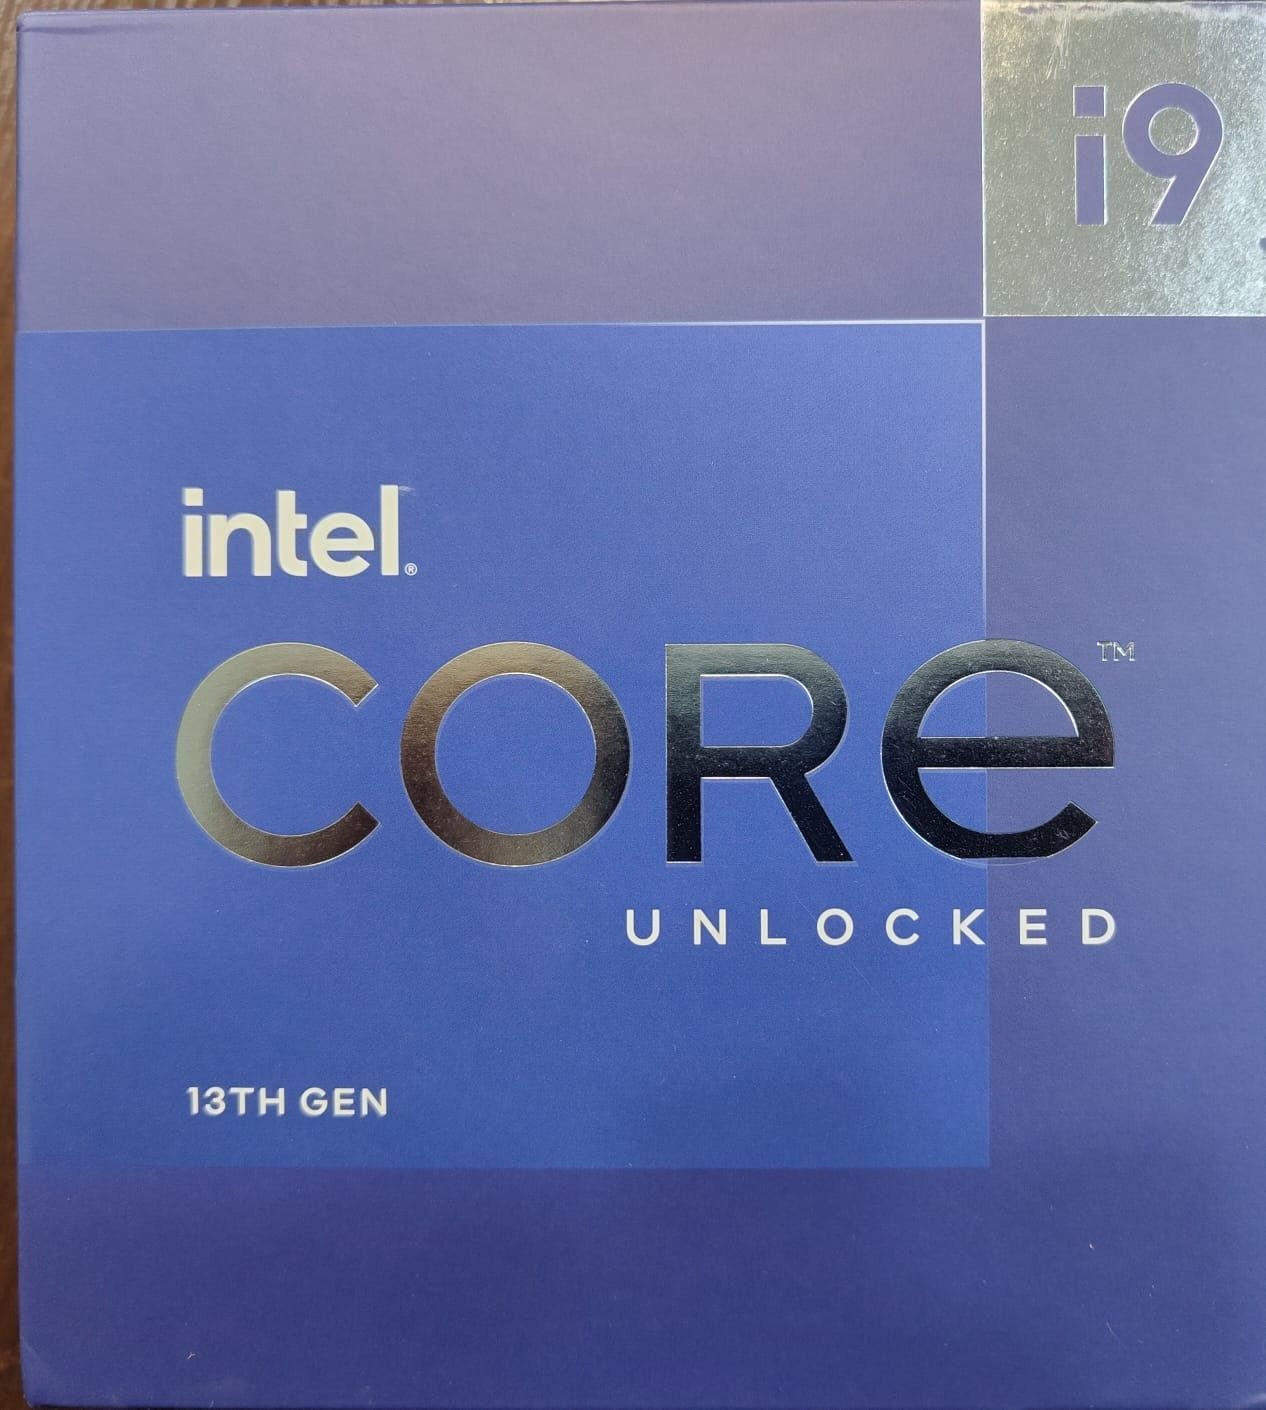 Intel CORE i9 unlocked 13-TH GEN